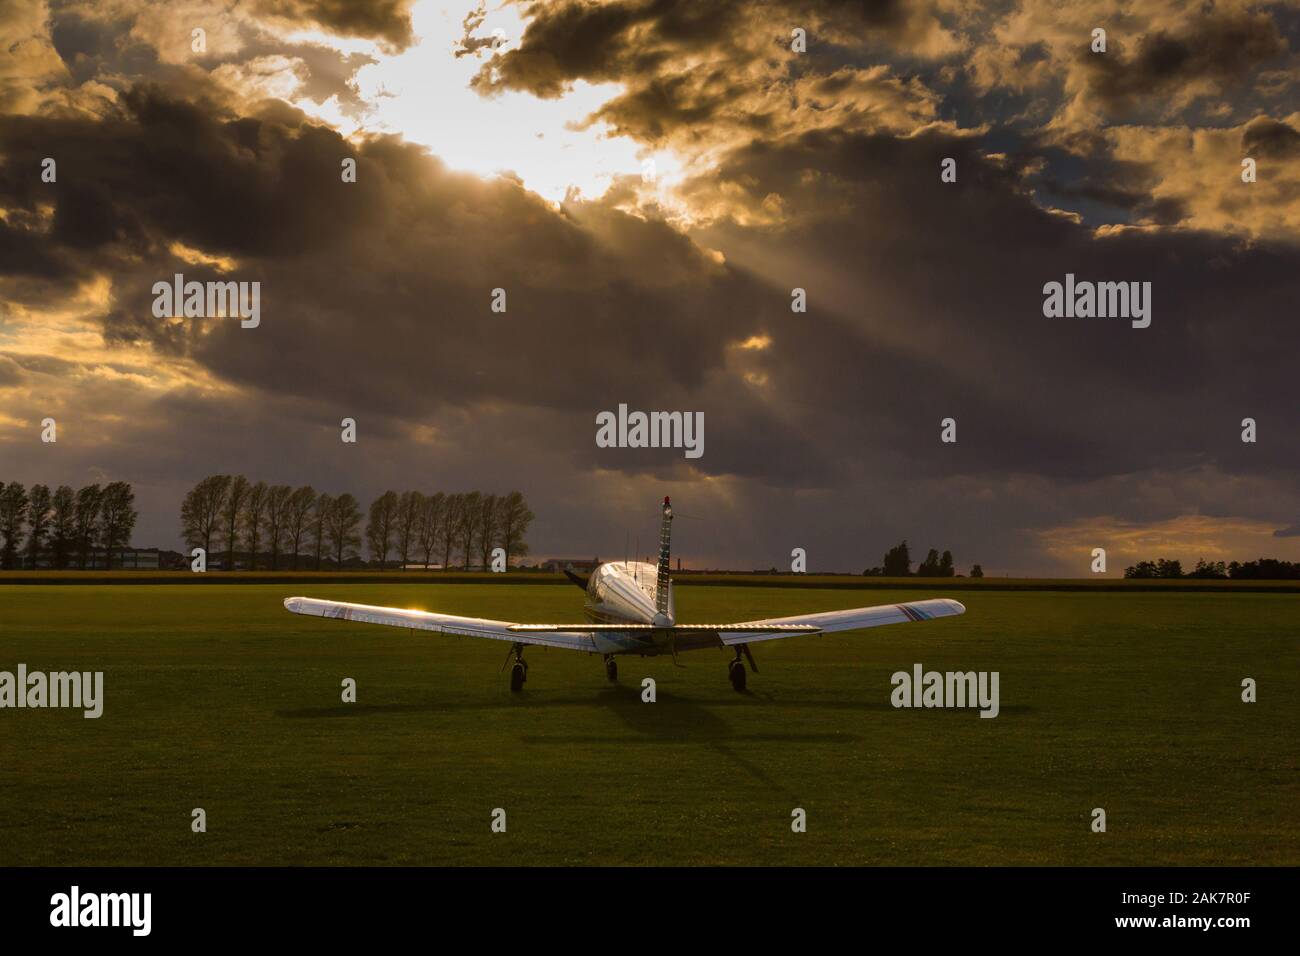 Piper P28 Cherokee avion sur un terrain d'aviation vide au coucher du soleil Banque D'Images